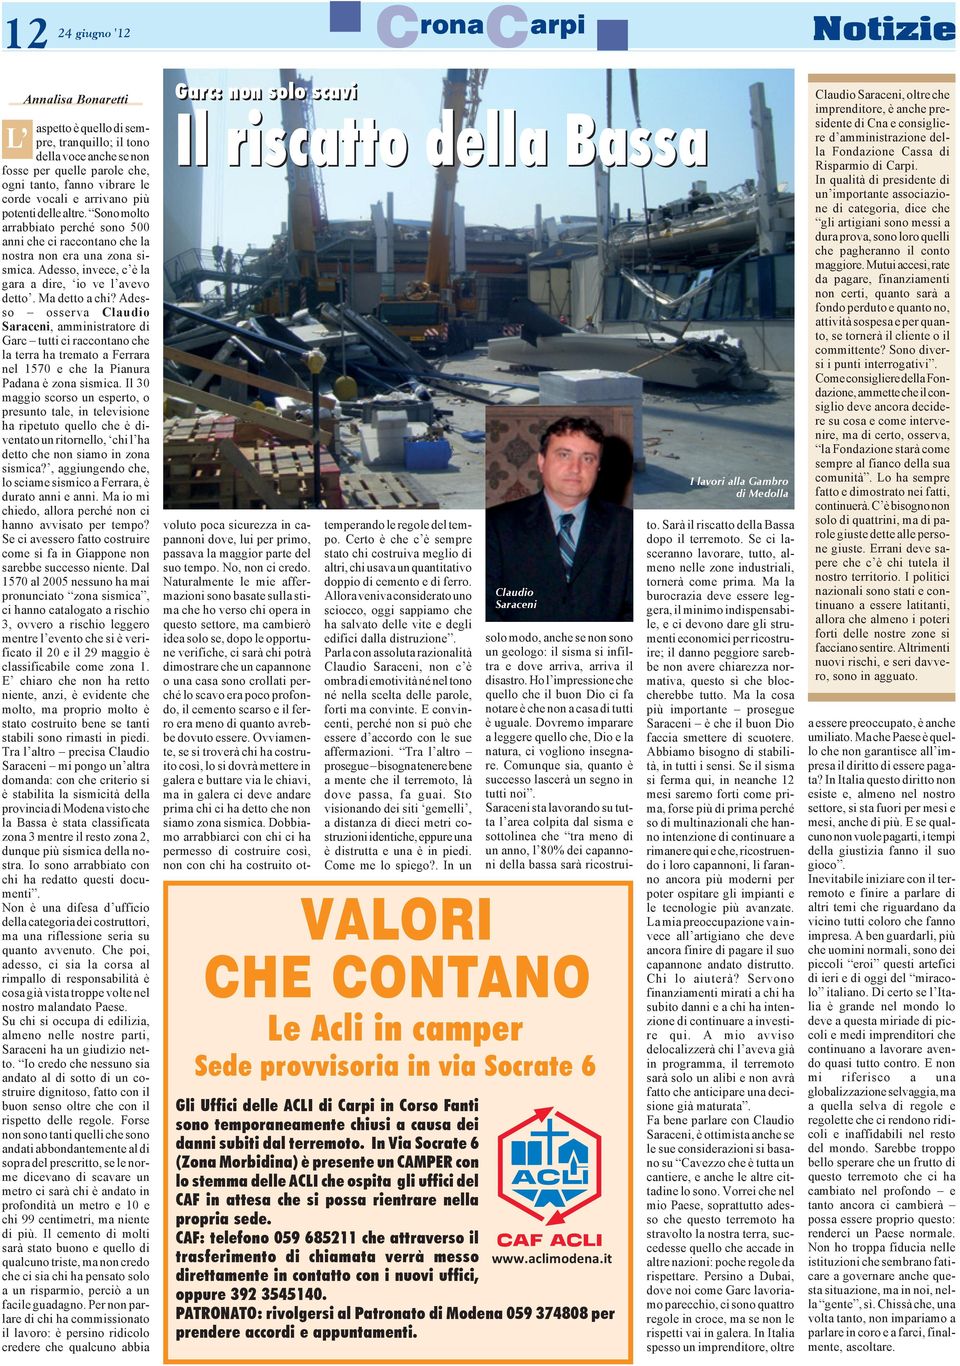 Ma detto a chi? Adesso osserva Claudio Saraceni, amministratore di Garc tutti ci raccontano che la terra ha tremato a Ferrara nel 1570 e che la Pianura Padana è zona sismica.